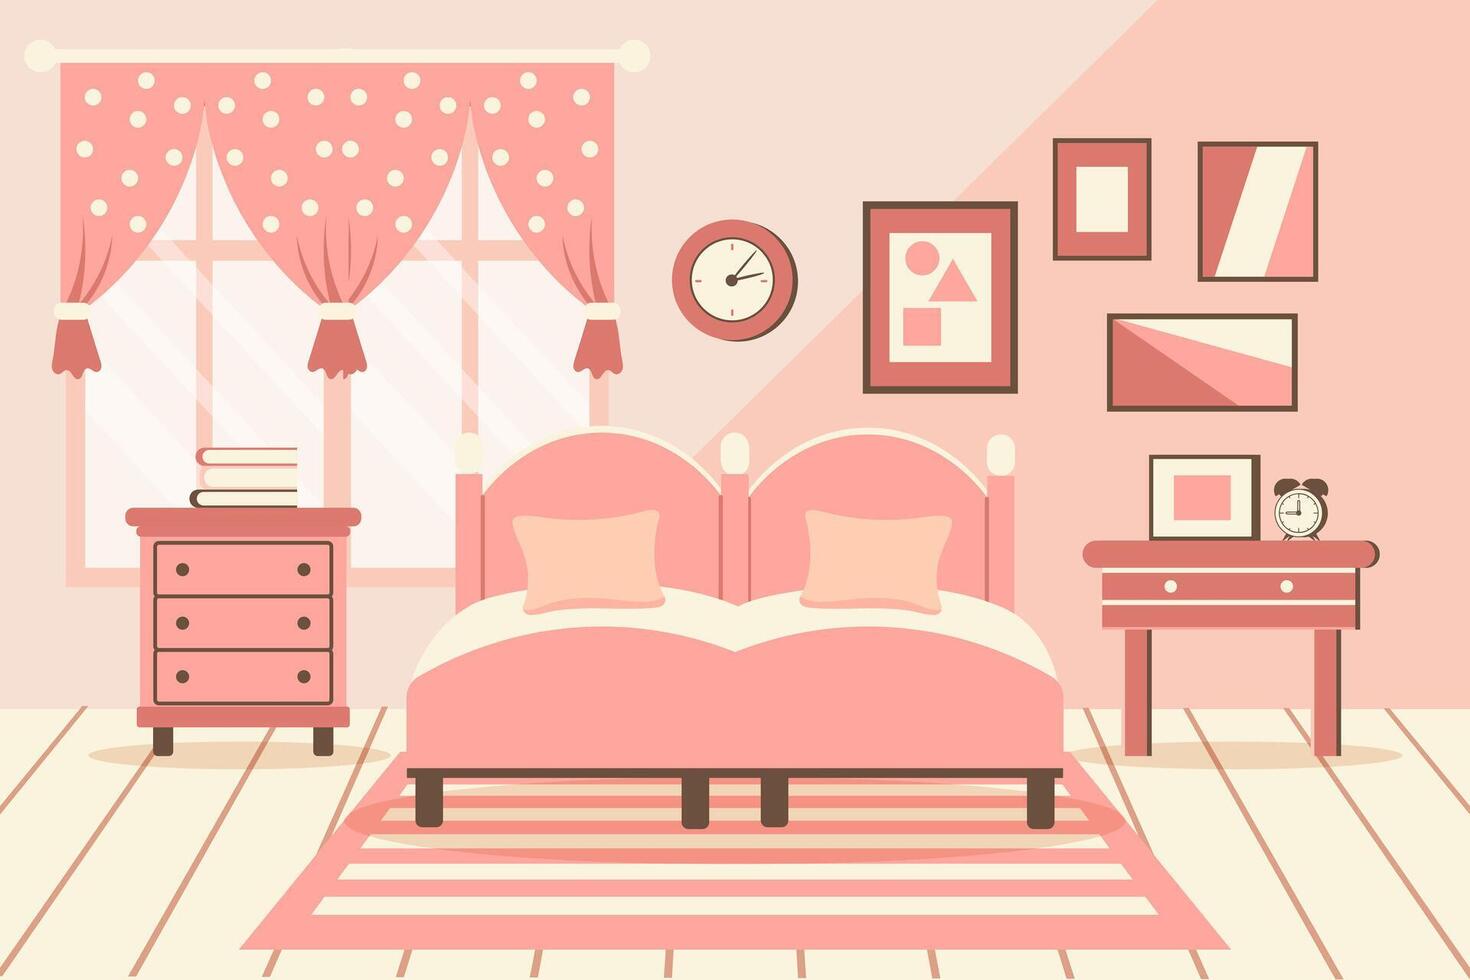 mysigt sovrum. sovrum interiör säng med kuddar, matta, bedside bord, garderob, fönster. interiör begrepp. platt illustration. vektor